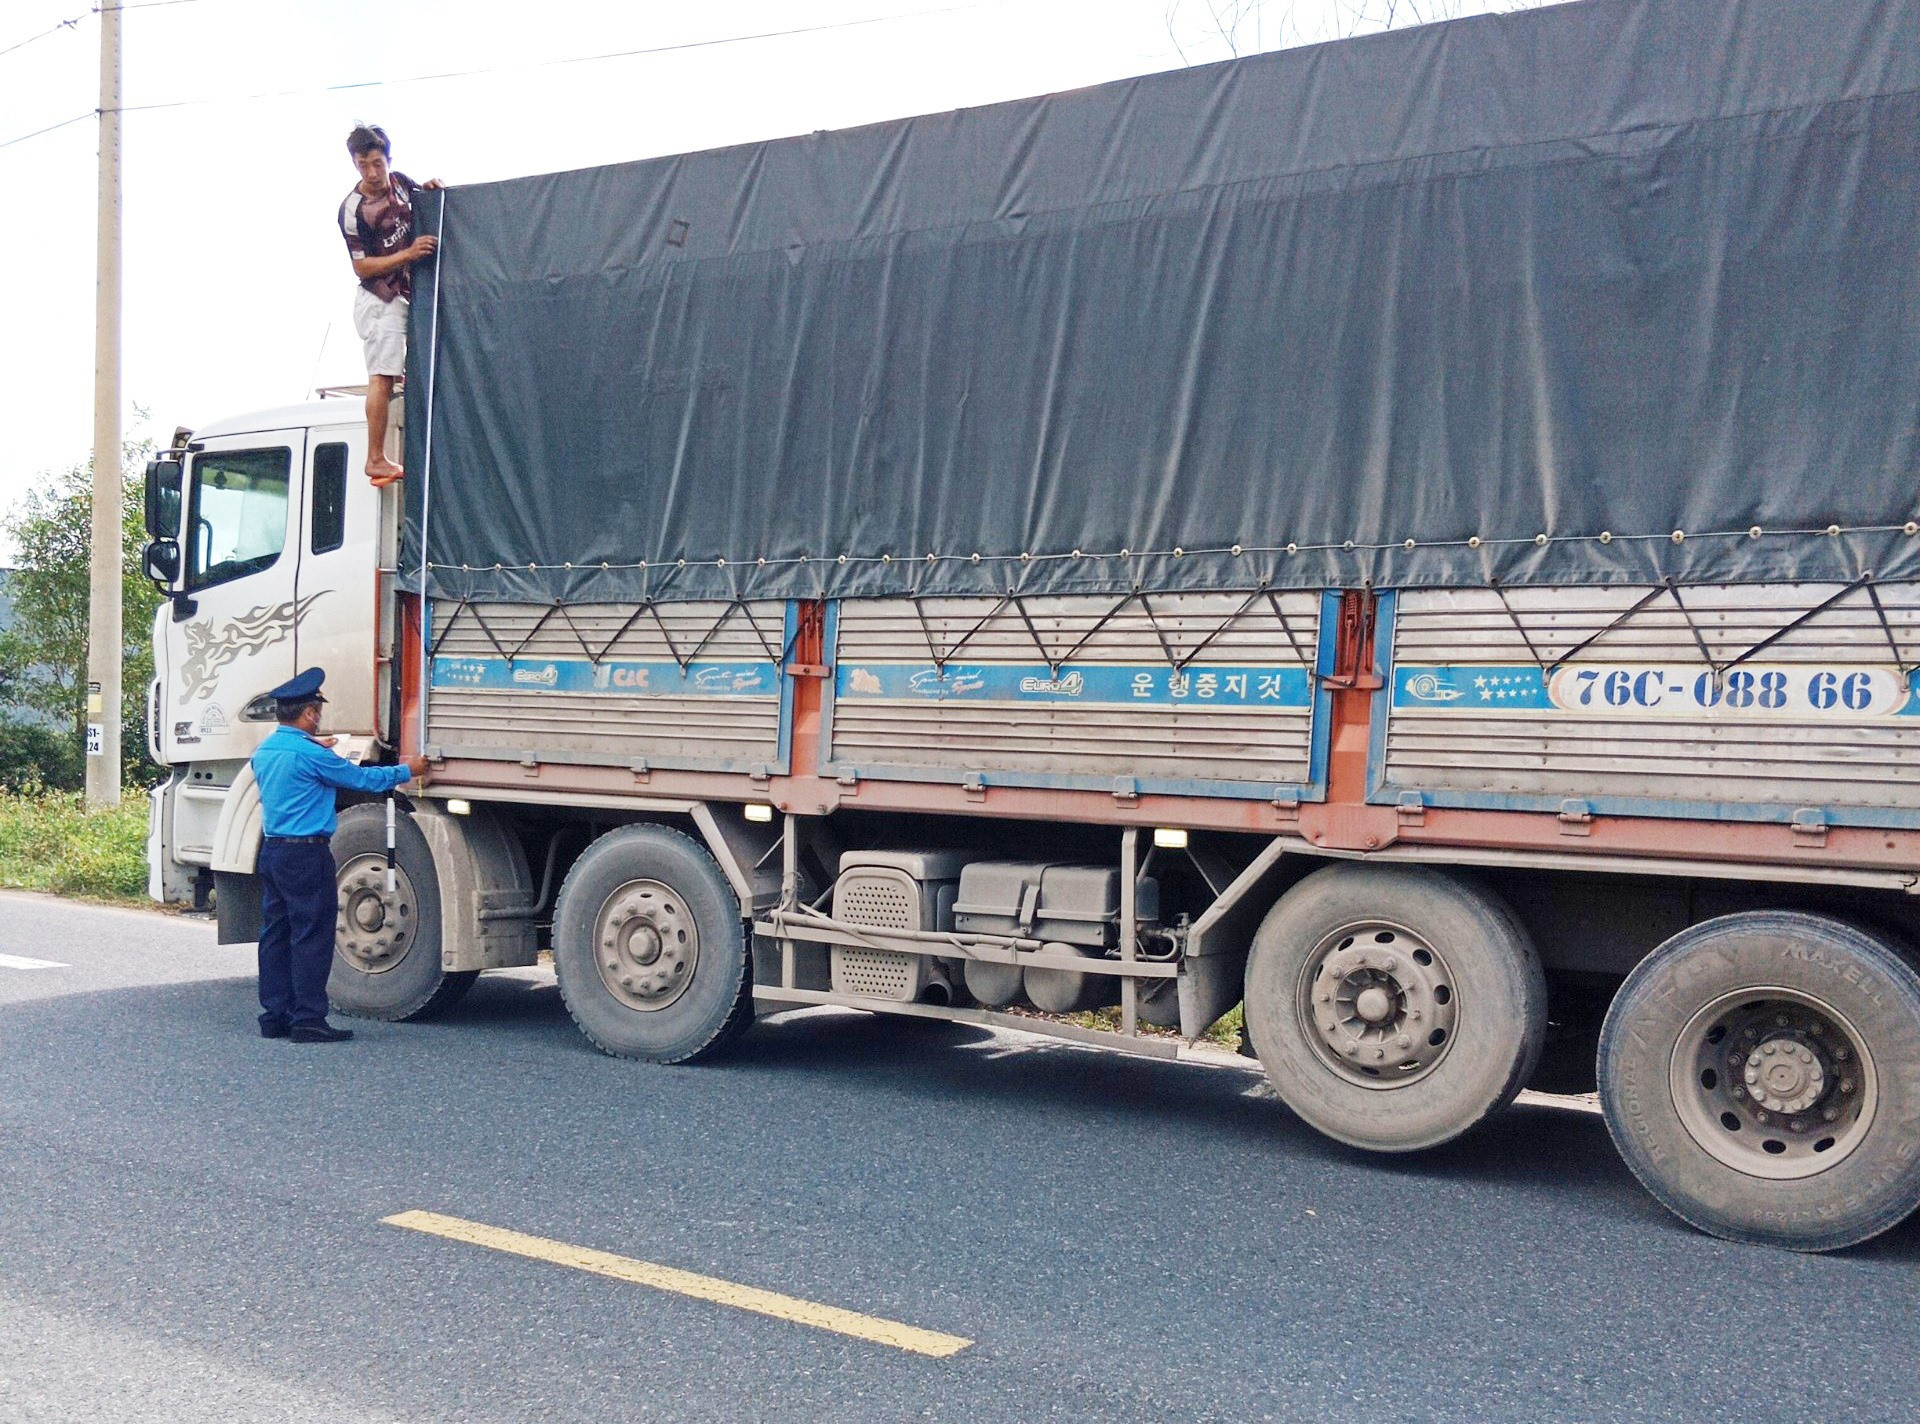 Thanh tra Sở GTVT kiểm soát xe chở hàng hóa trên quốc lộ 14E qua Thăng Bình. Ảnh: SC